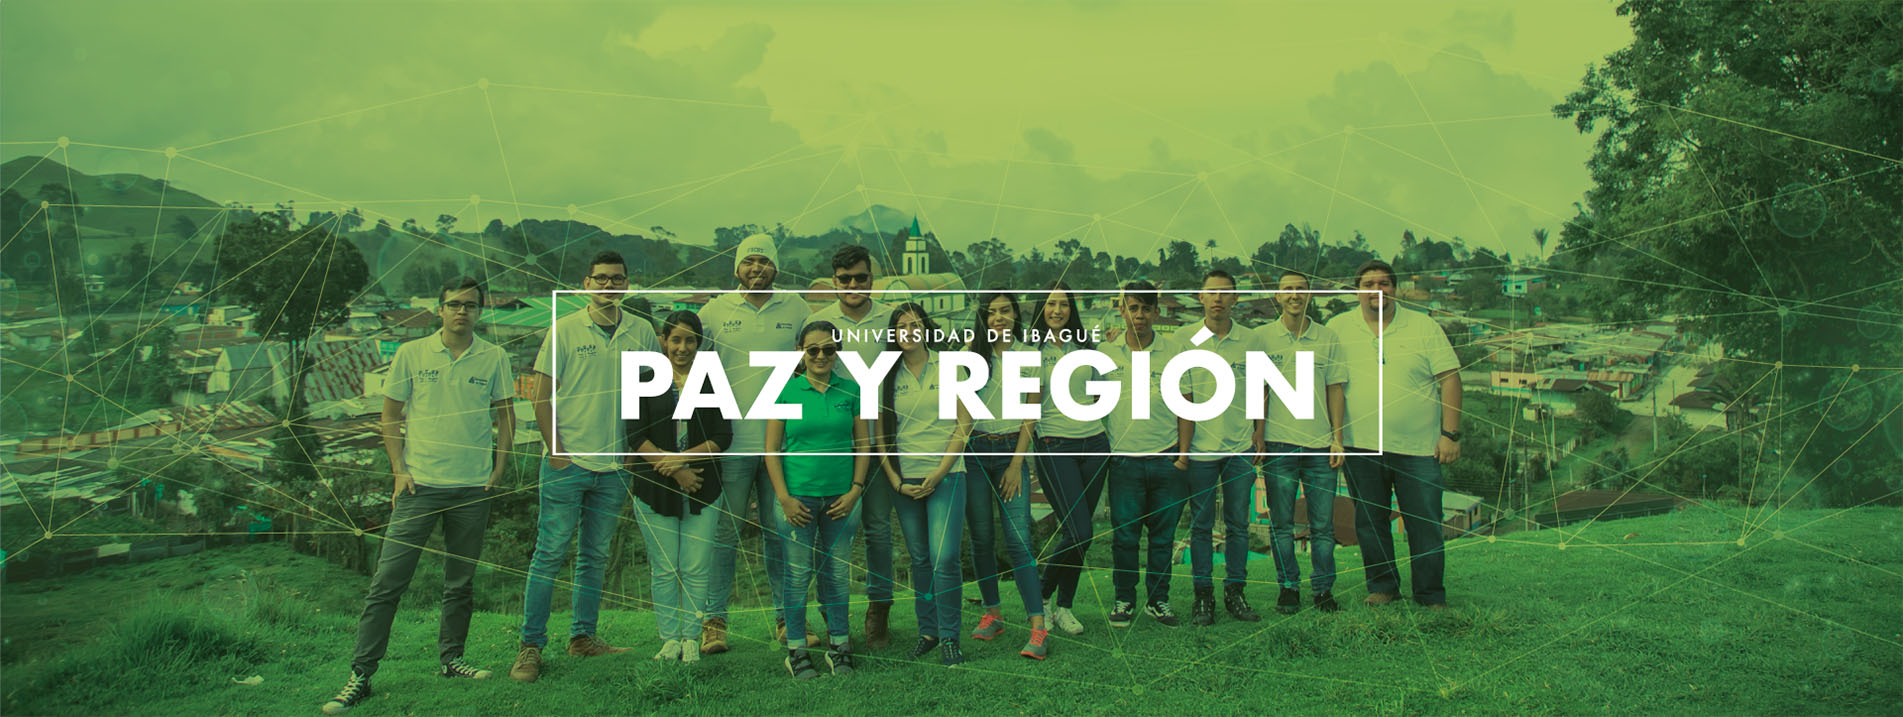 Imagen de cabecera para el micrositio de Paz y Región Universidad de Ibagué